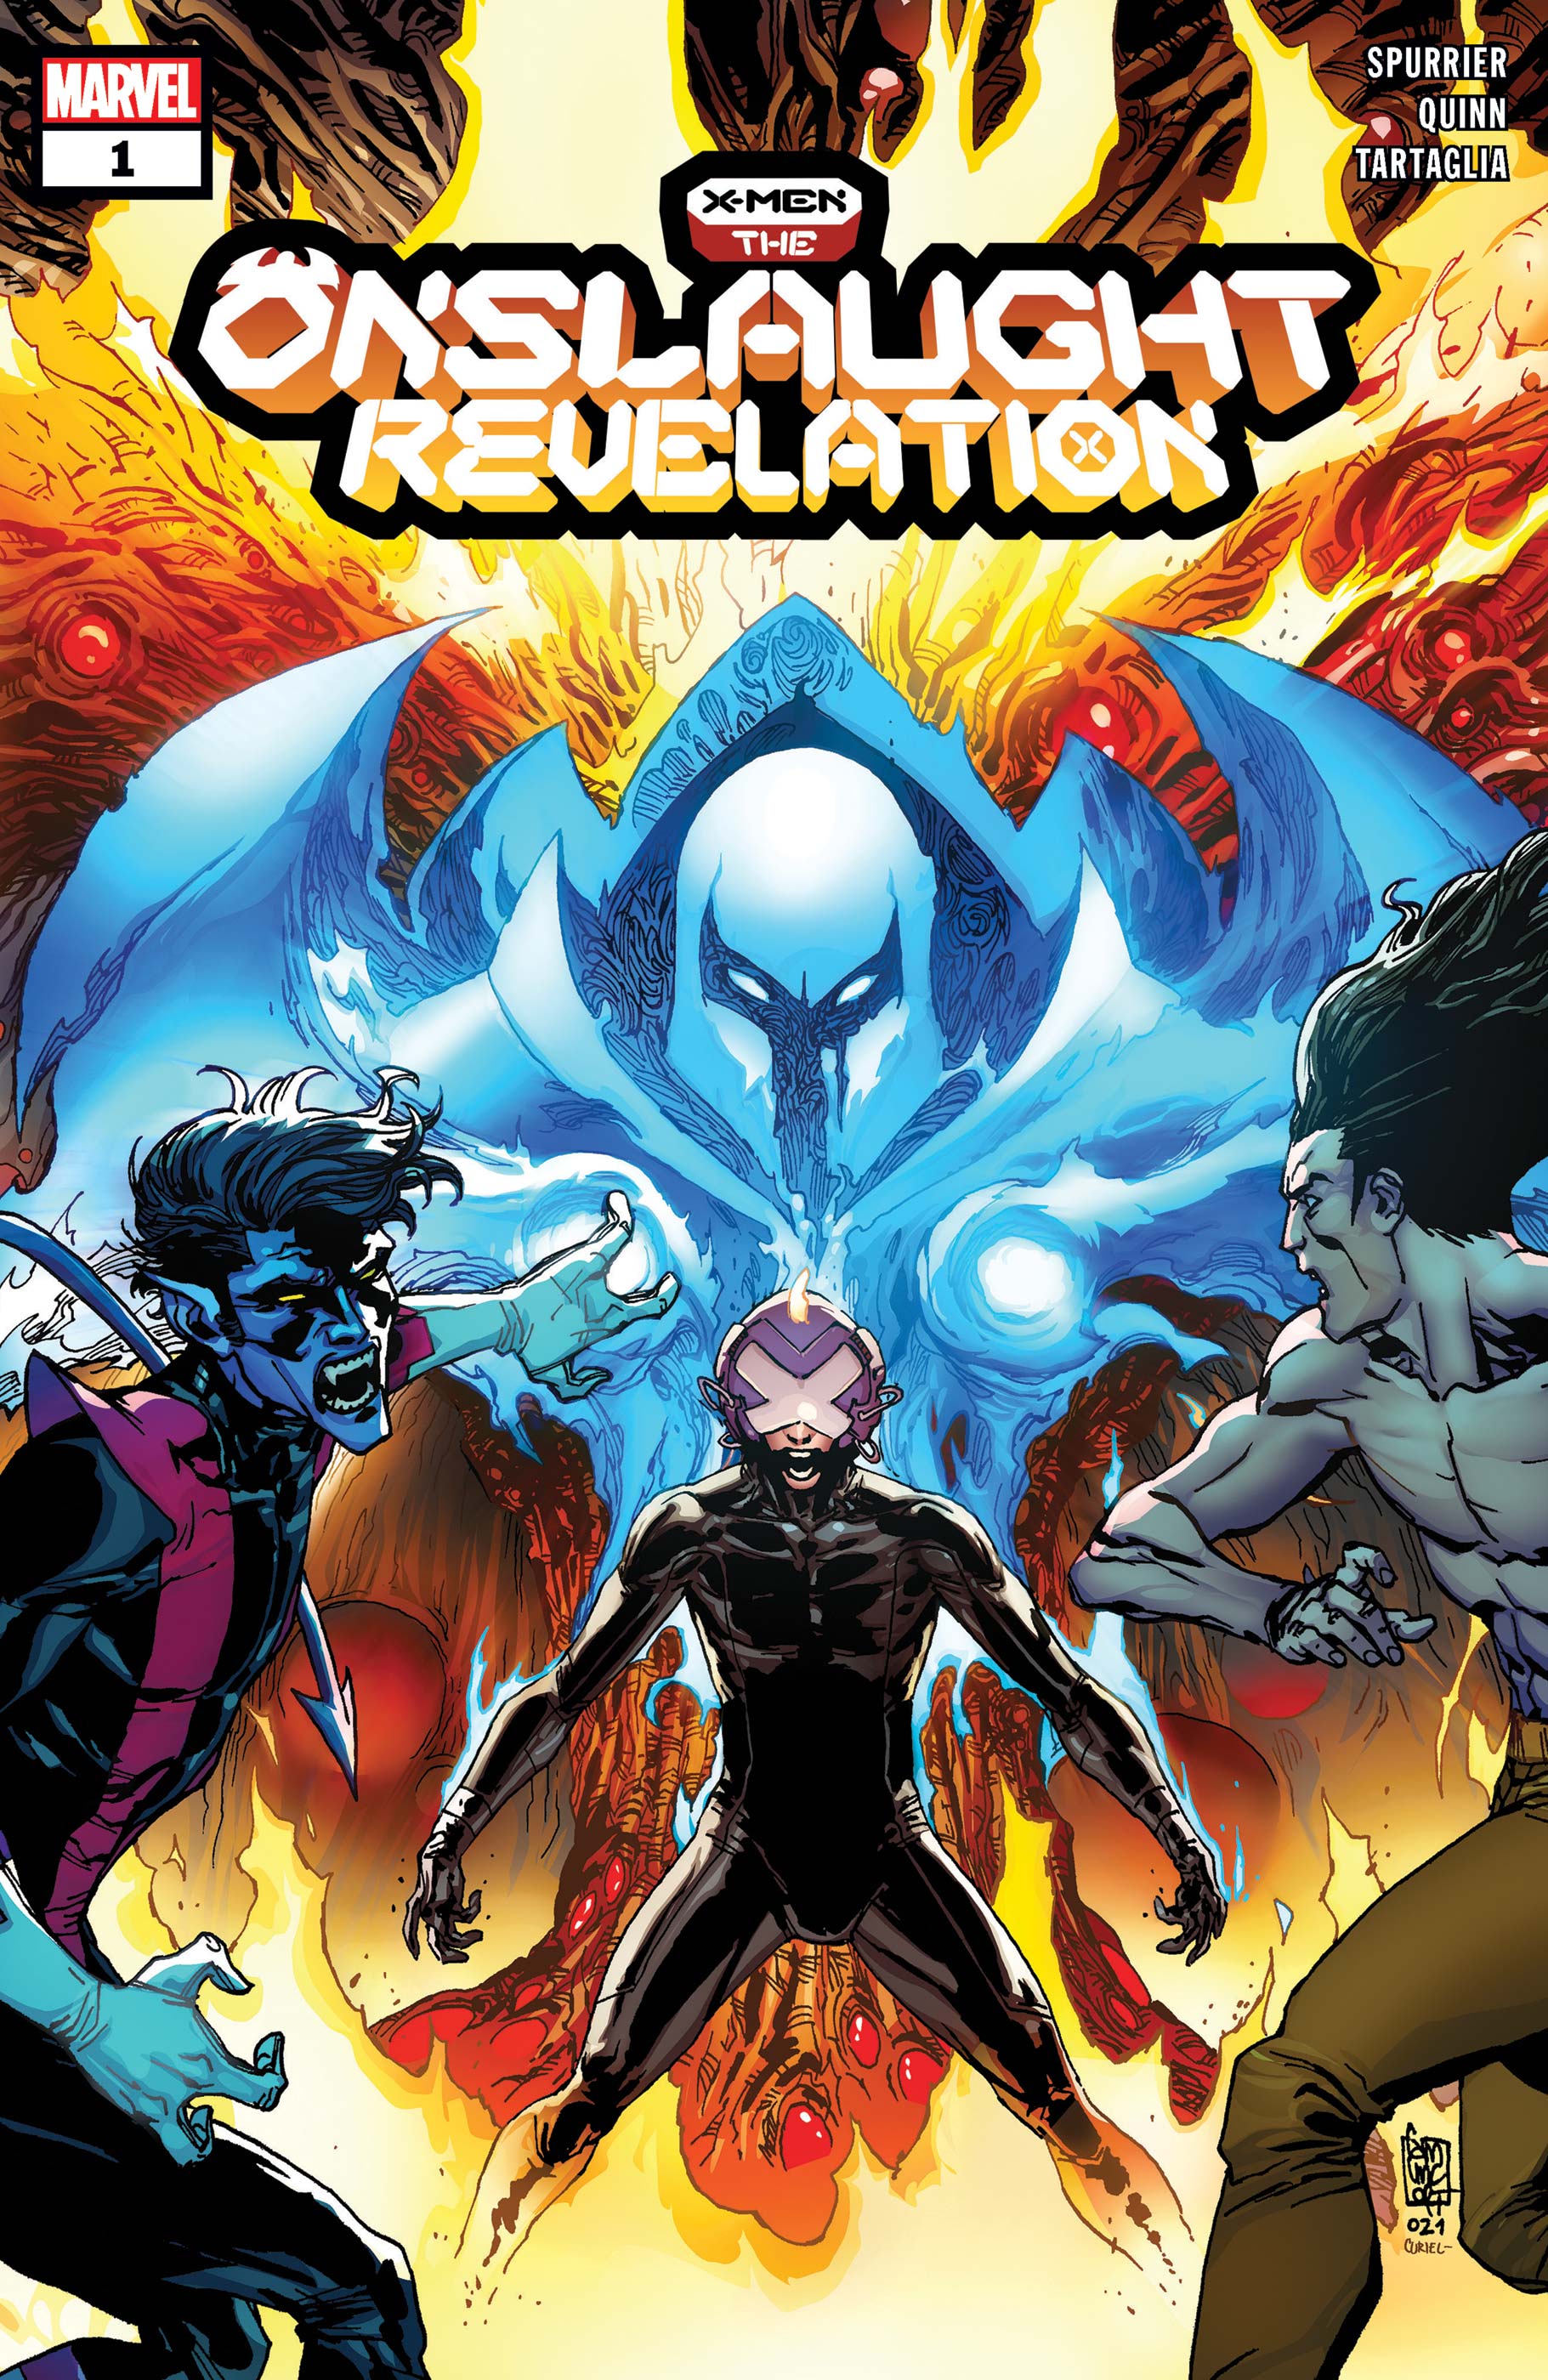 X-Men: The Onslaught Revelation Vol 1 1 | Marvel Database | Fandom